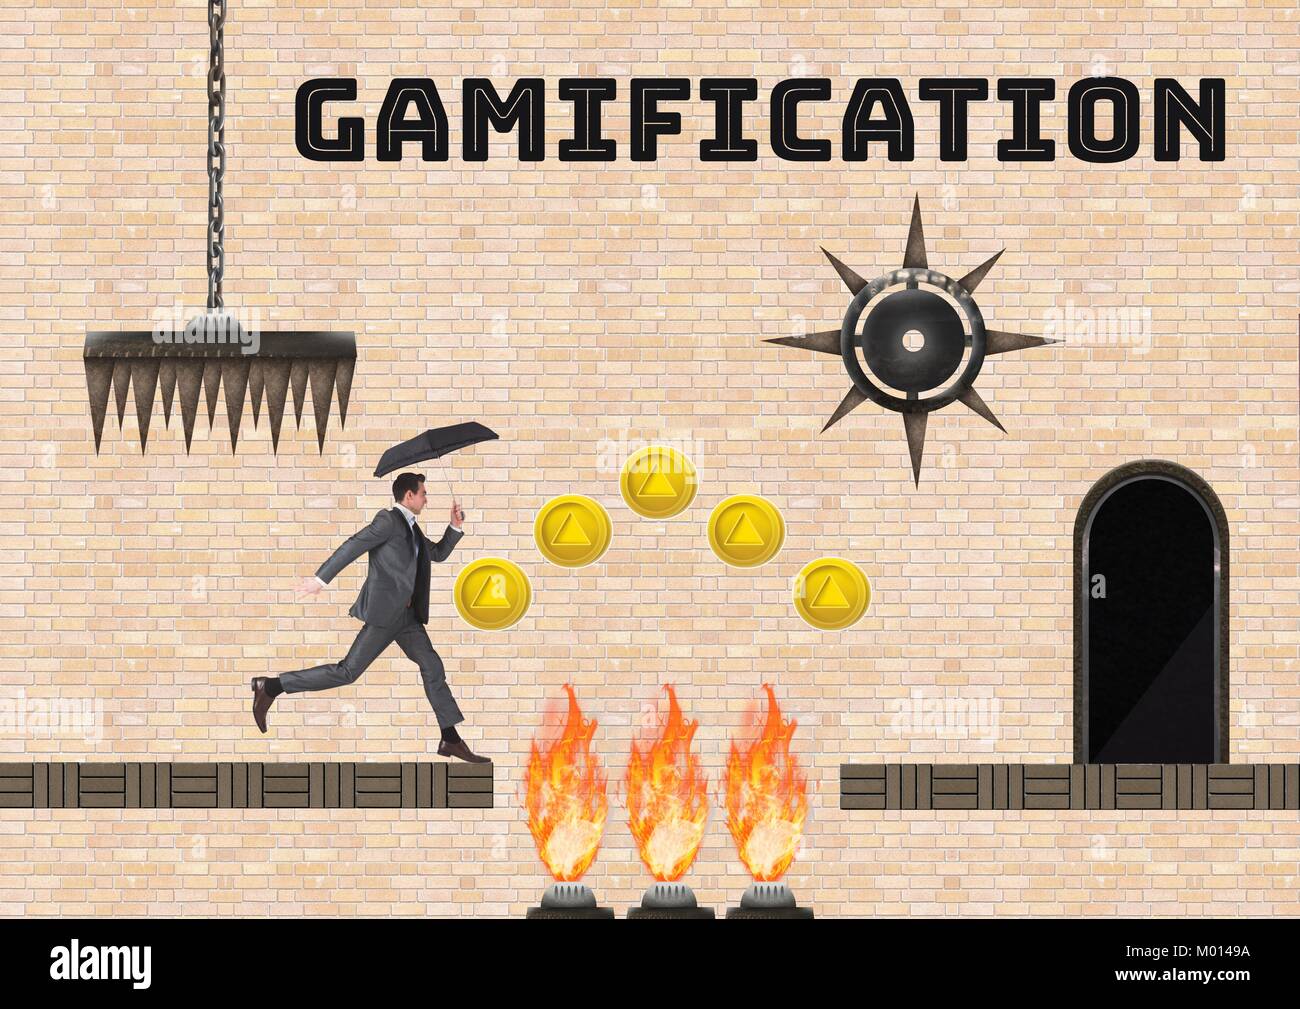 Texte et l'homme dans Gamification jeu informatique de niveau avec des crédits et des pièges Banque D'Images